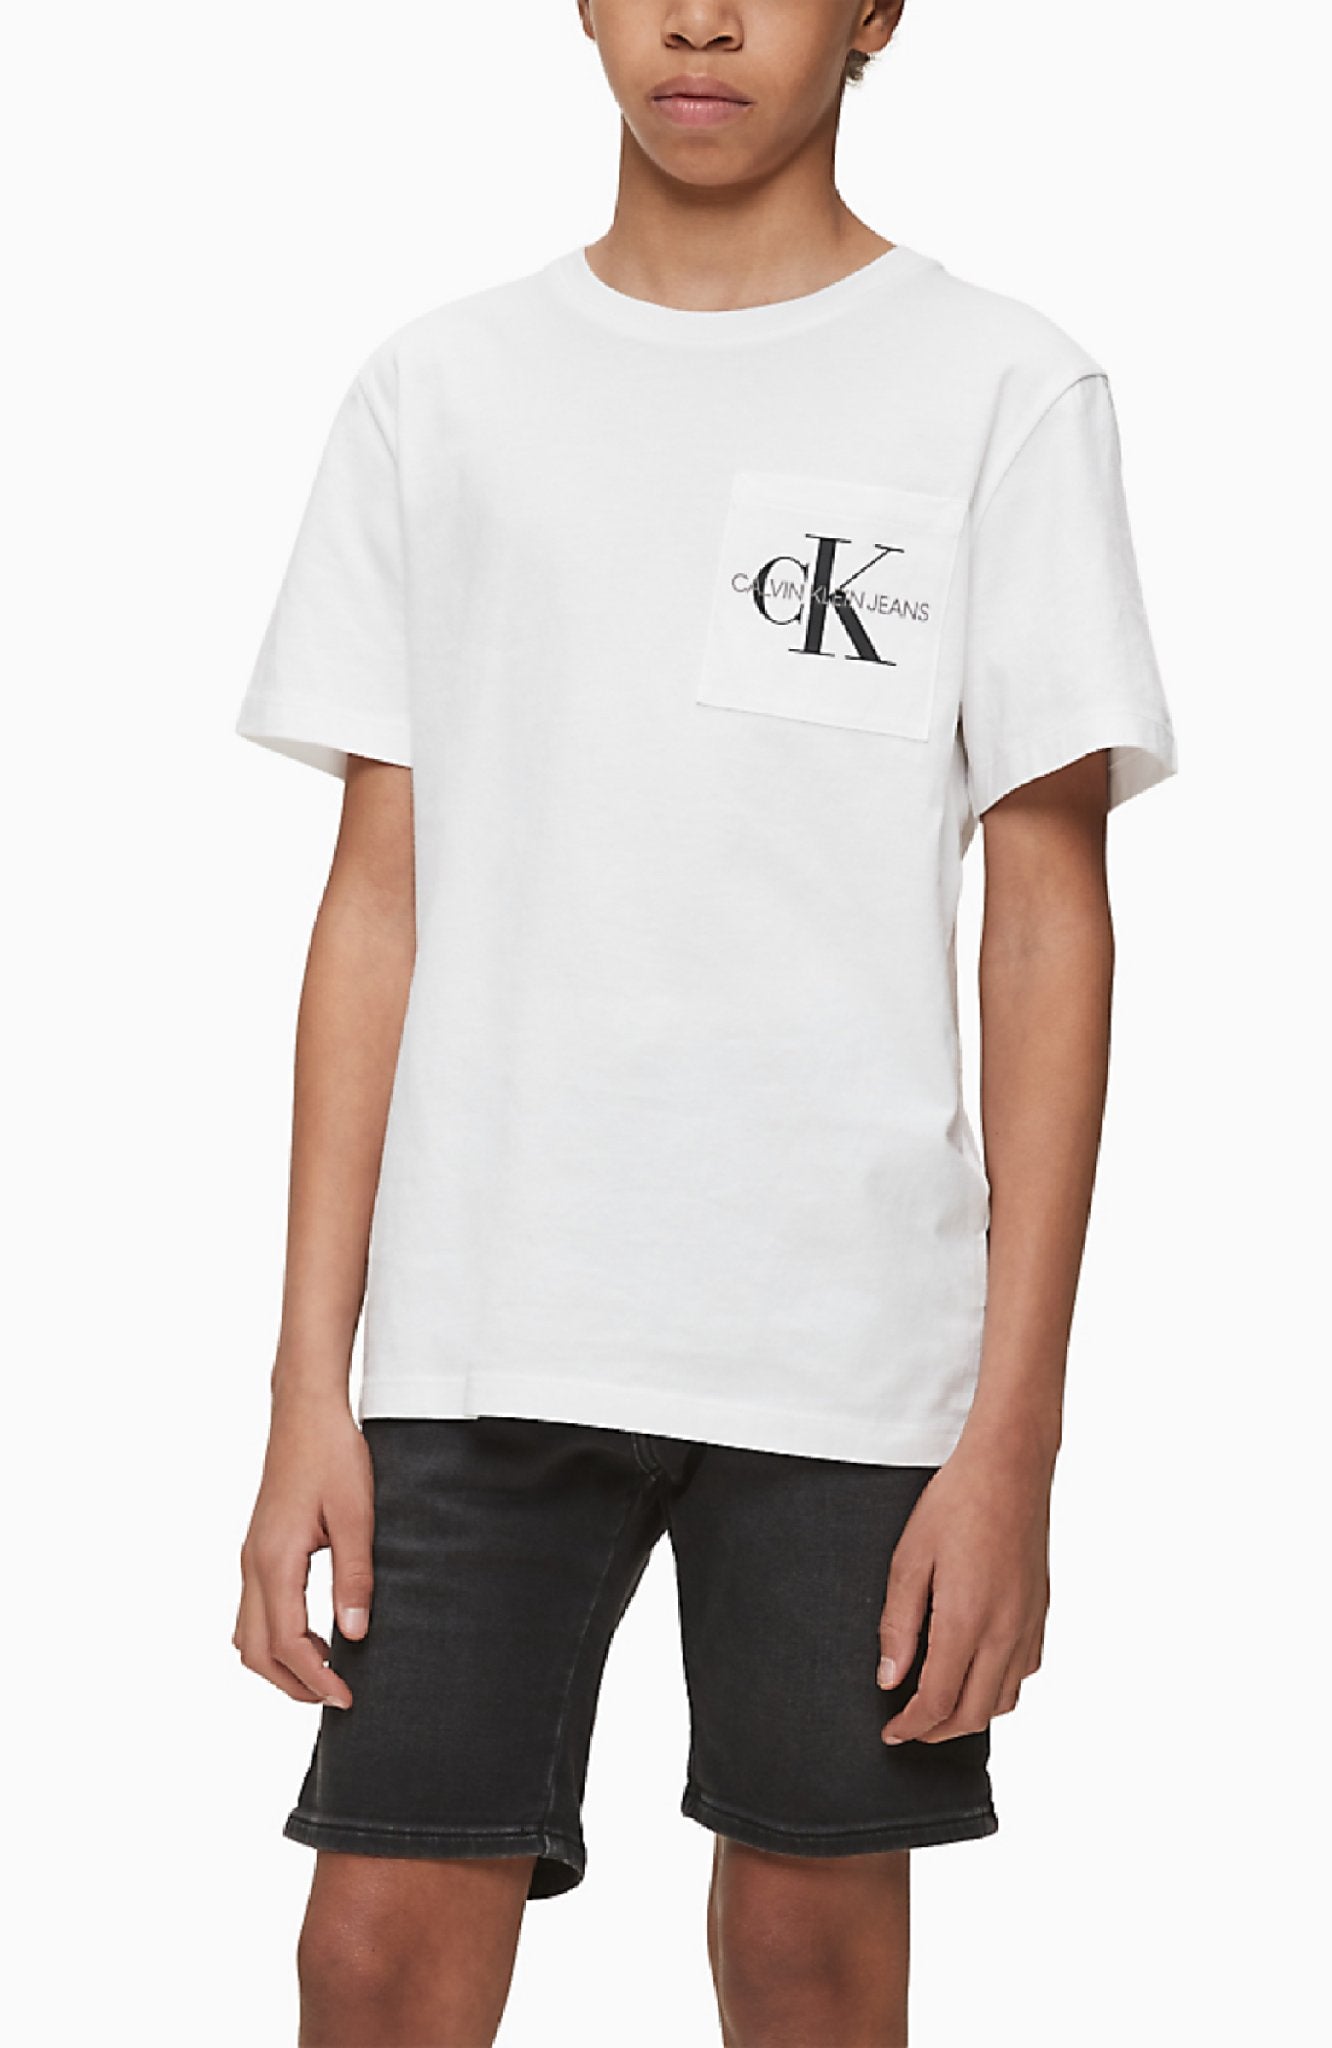 Jongens Monogram Pocket Top van Calvin Klein in de kleur Wit in maat 176.